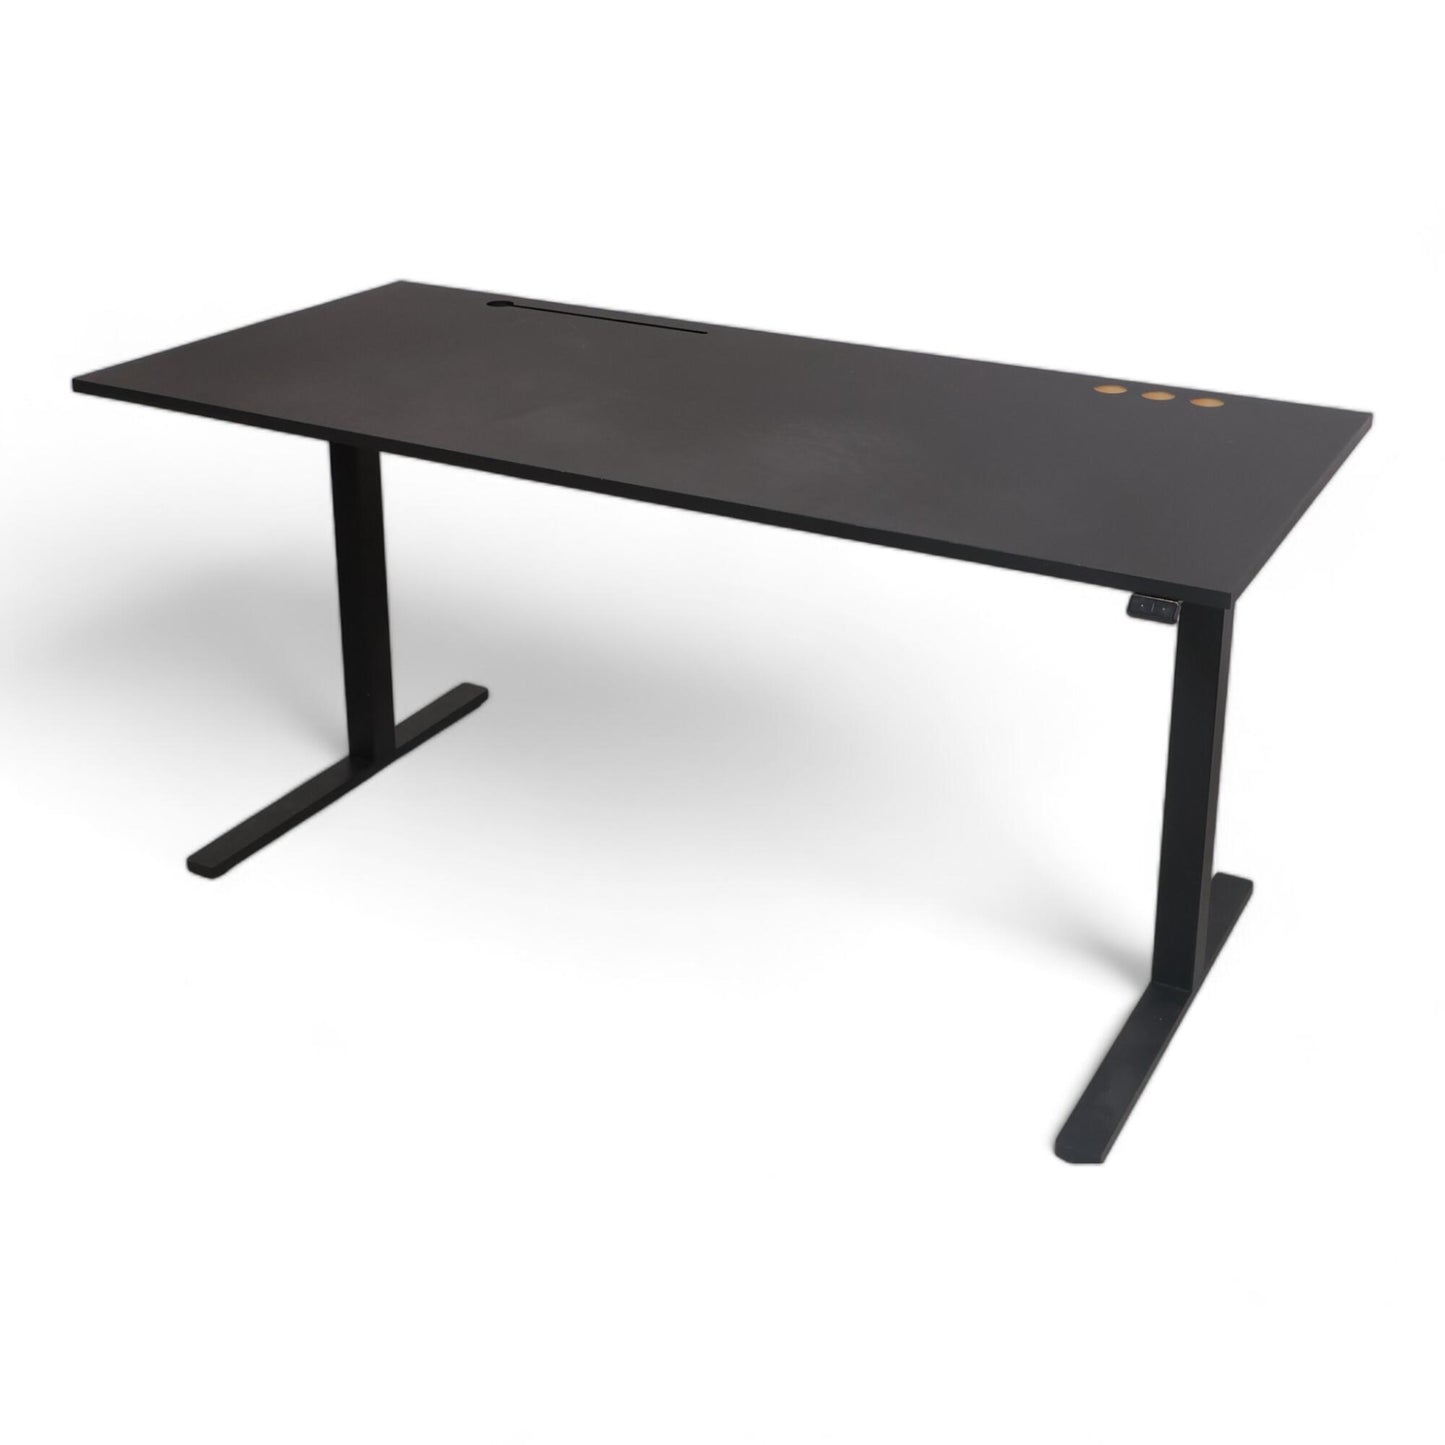 Kvalitetsikret | Sort Swedstyle elektrisk hev/senk skrivebord, 180x80 cm